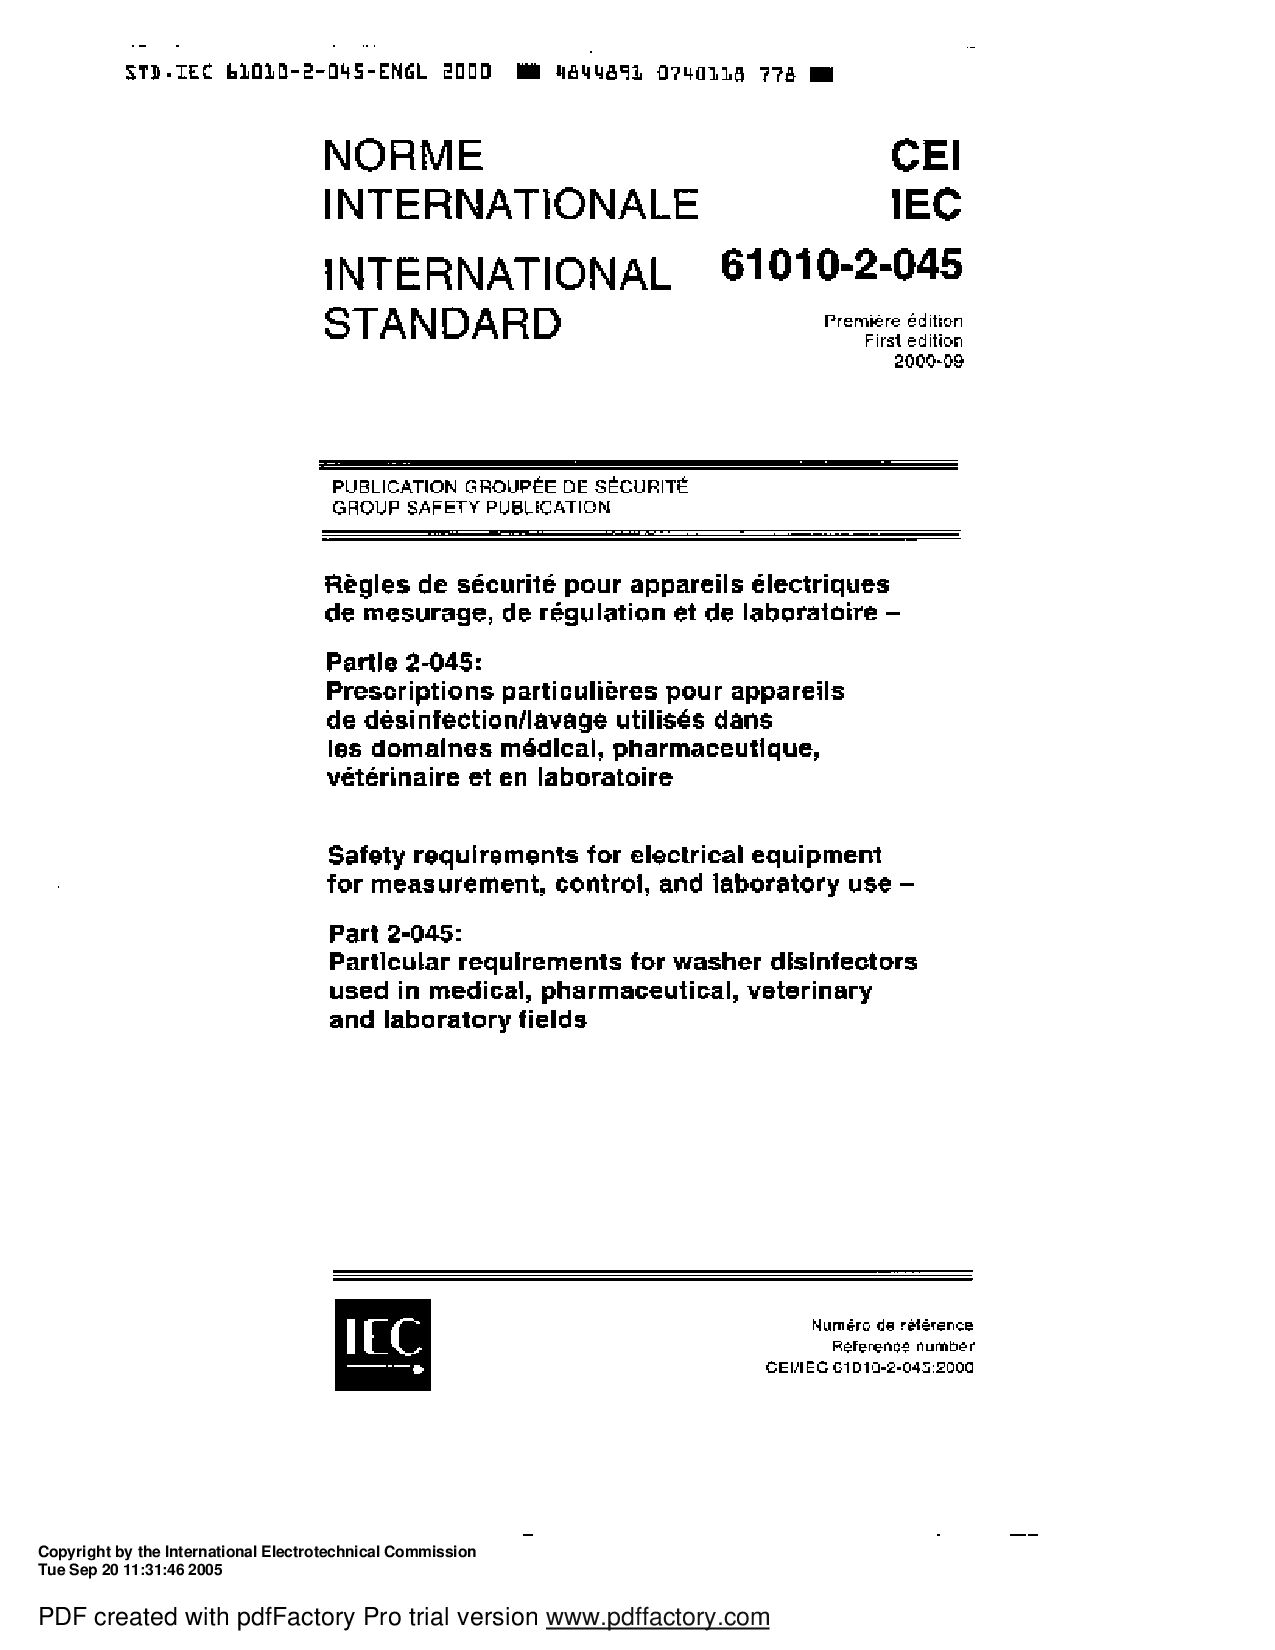 IEC 61010-2-045-2000